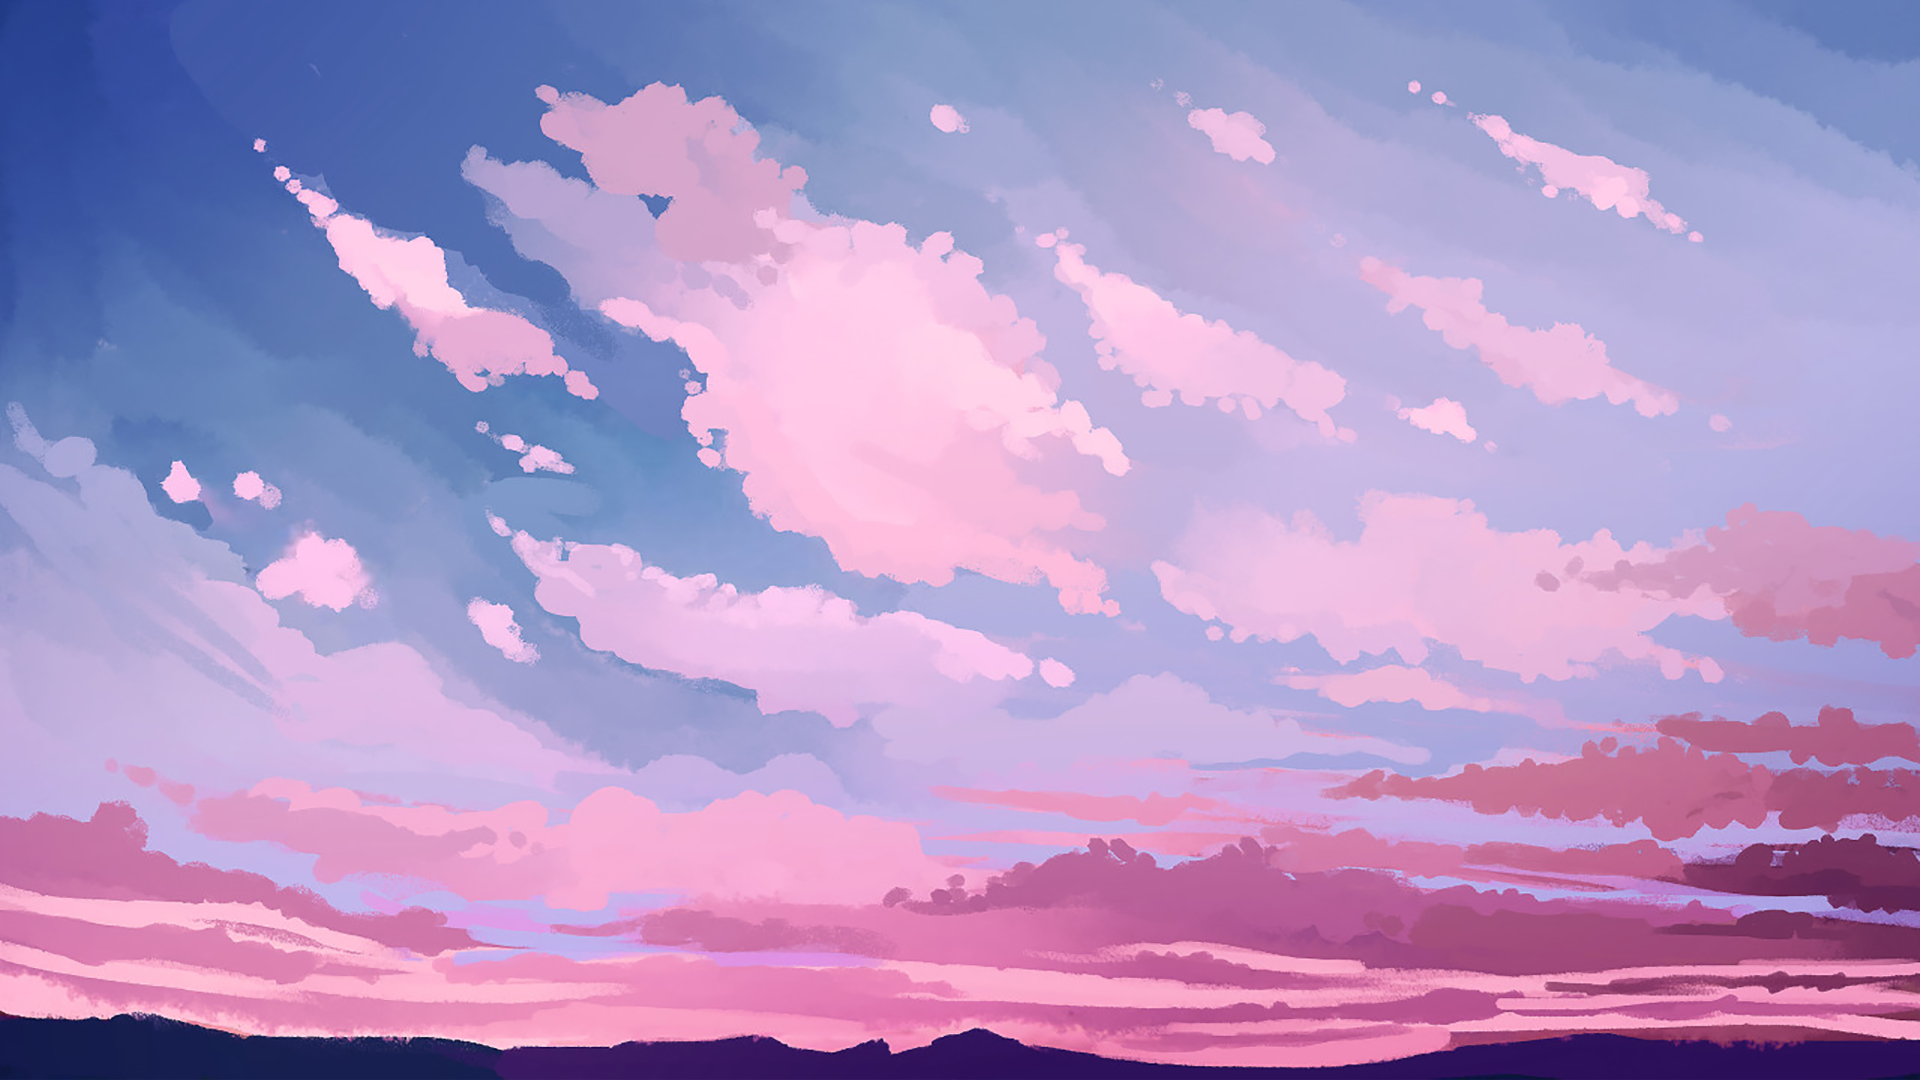 Bức tranh bầu trời hồng đẹp tuyệt vời